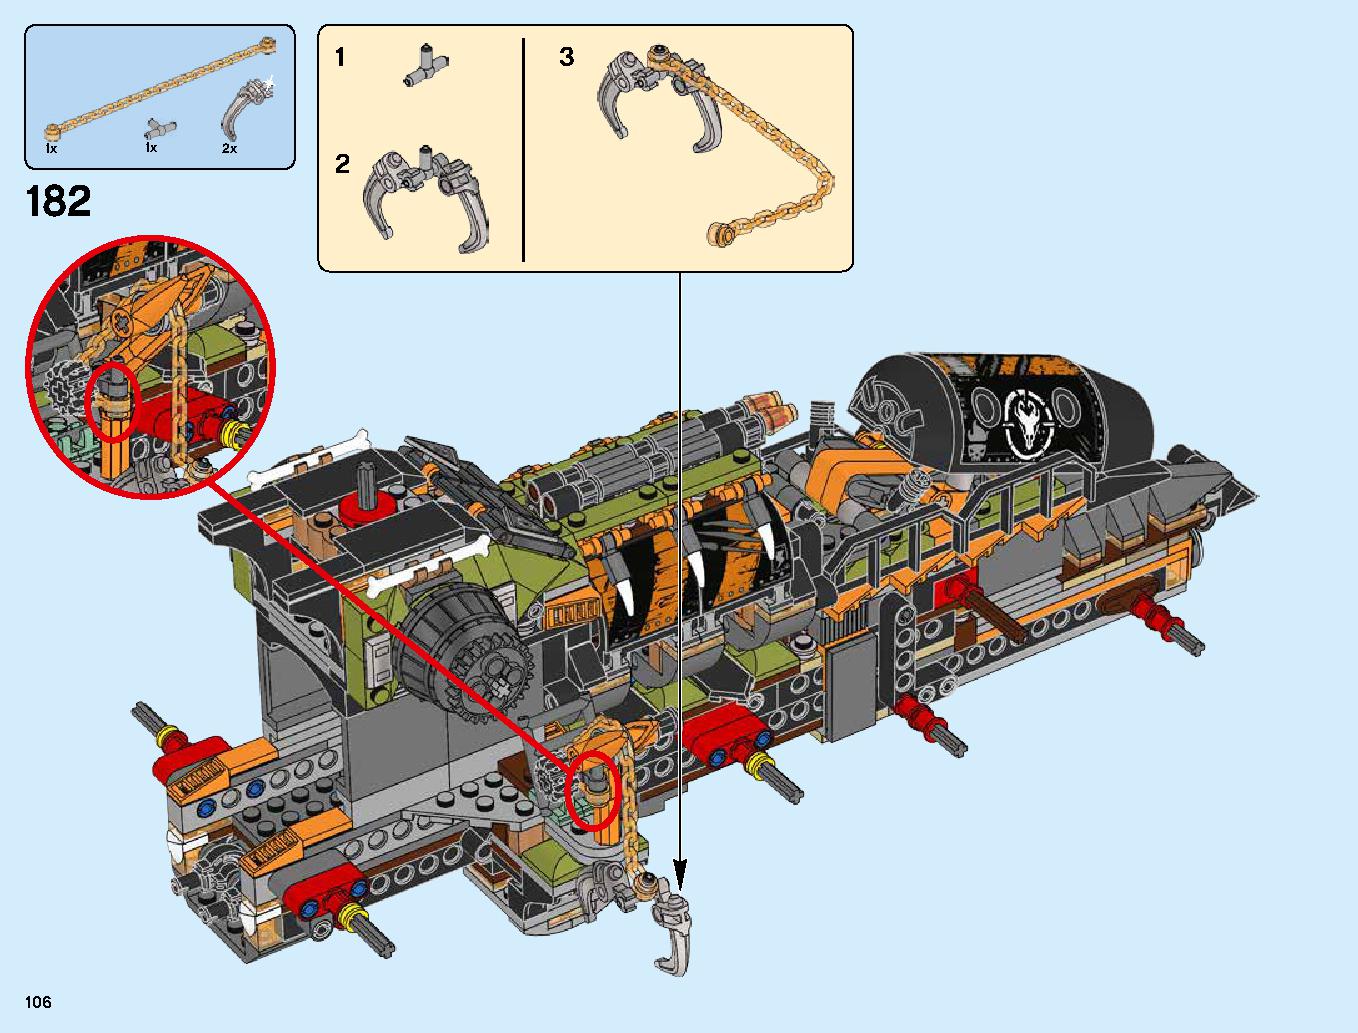 ハンティング・デスストライカー 70654 レゴの商品情報 レゴの説明書・組立方法 106 page